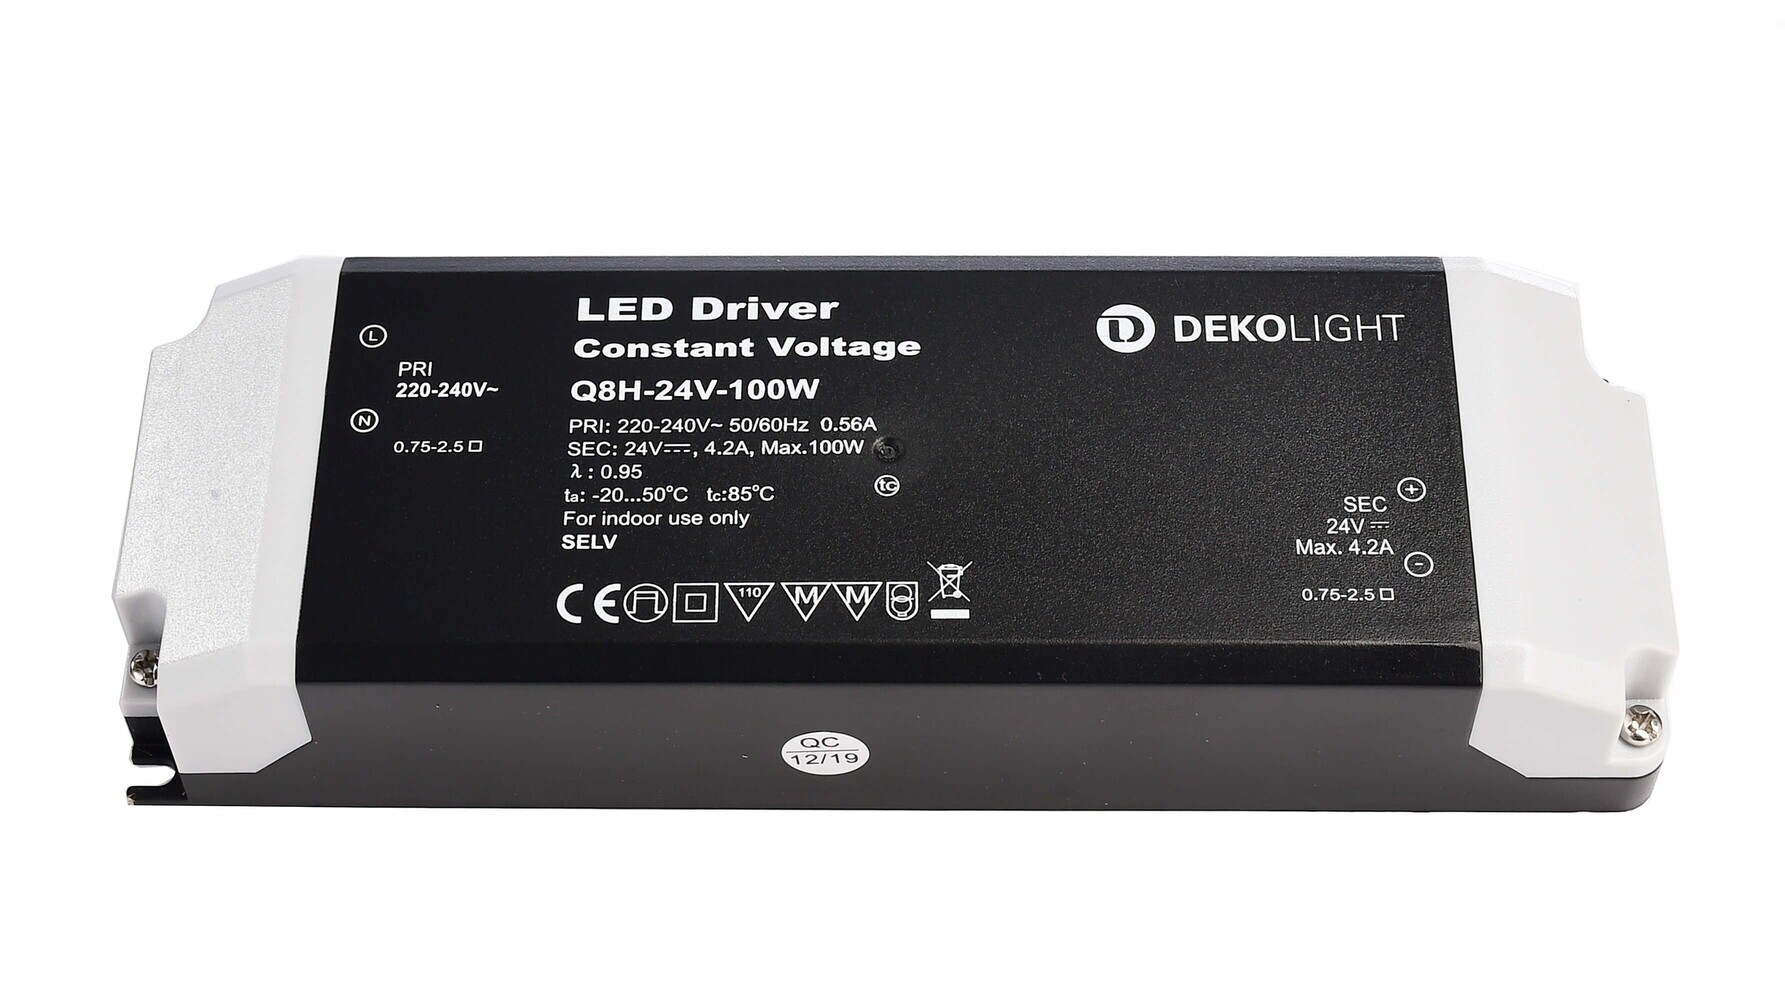 Hochwertiges LED-Netzteil von Deko-Light, spannungskonstant und optimiert für 24V DC Betrieb